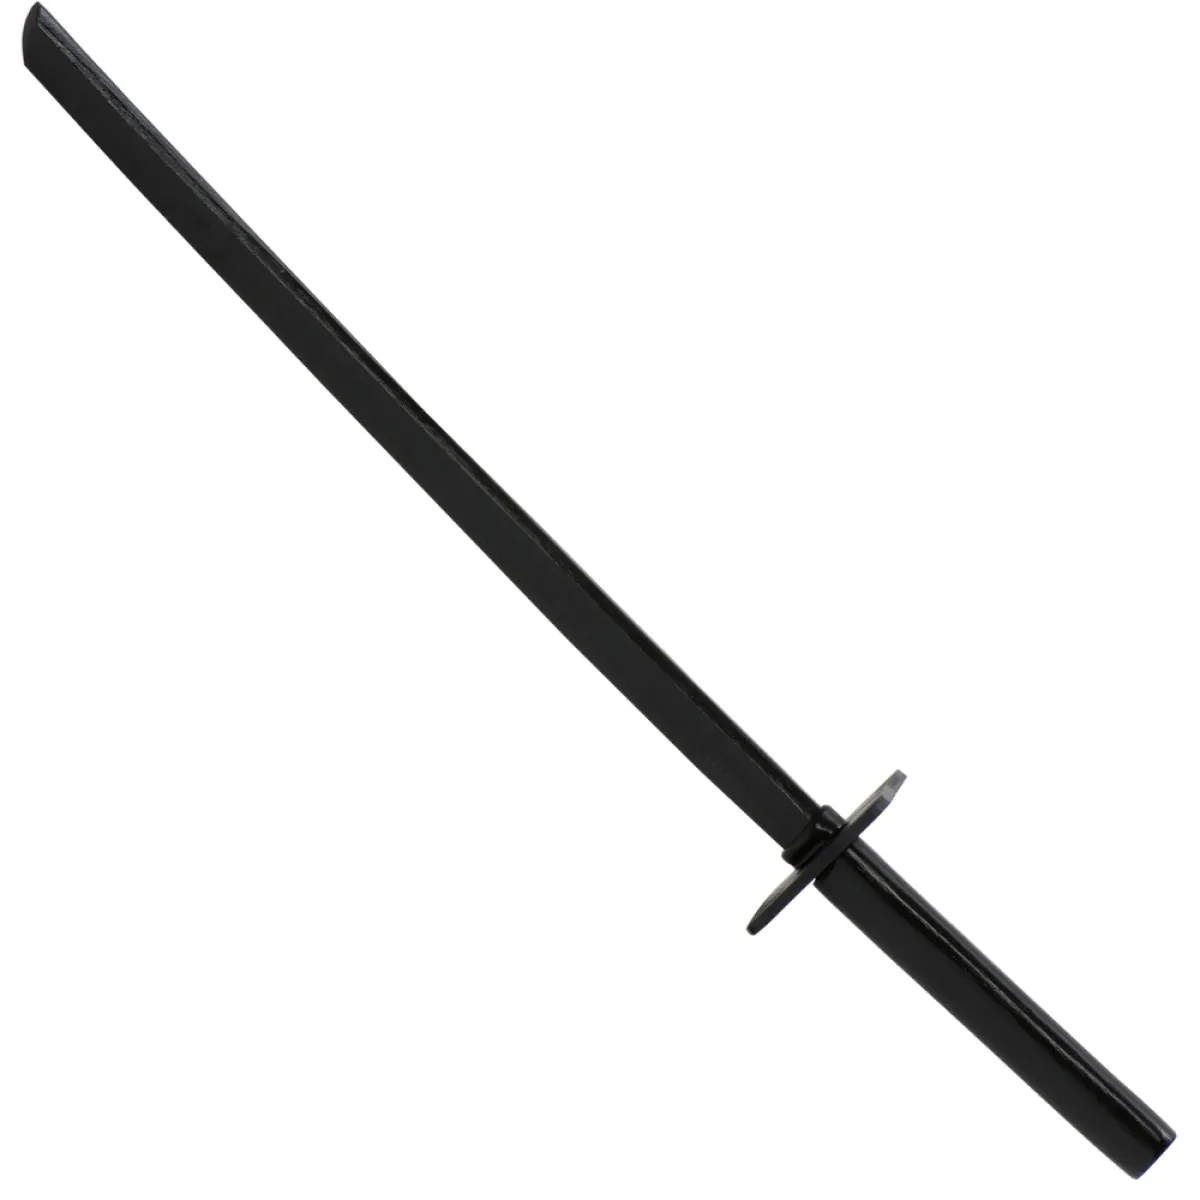 Ninja wooden sword